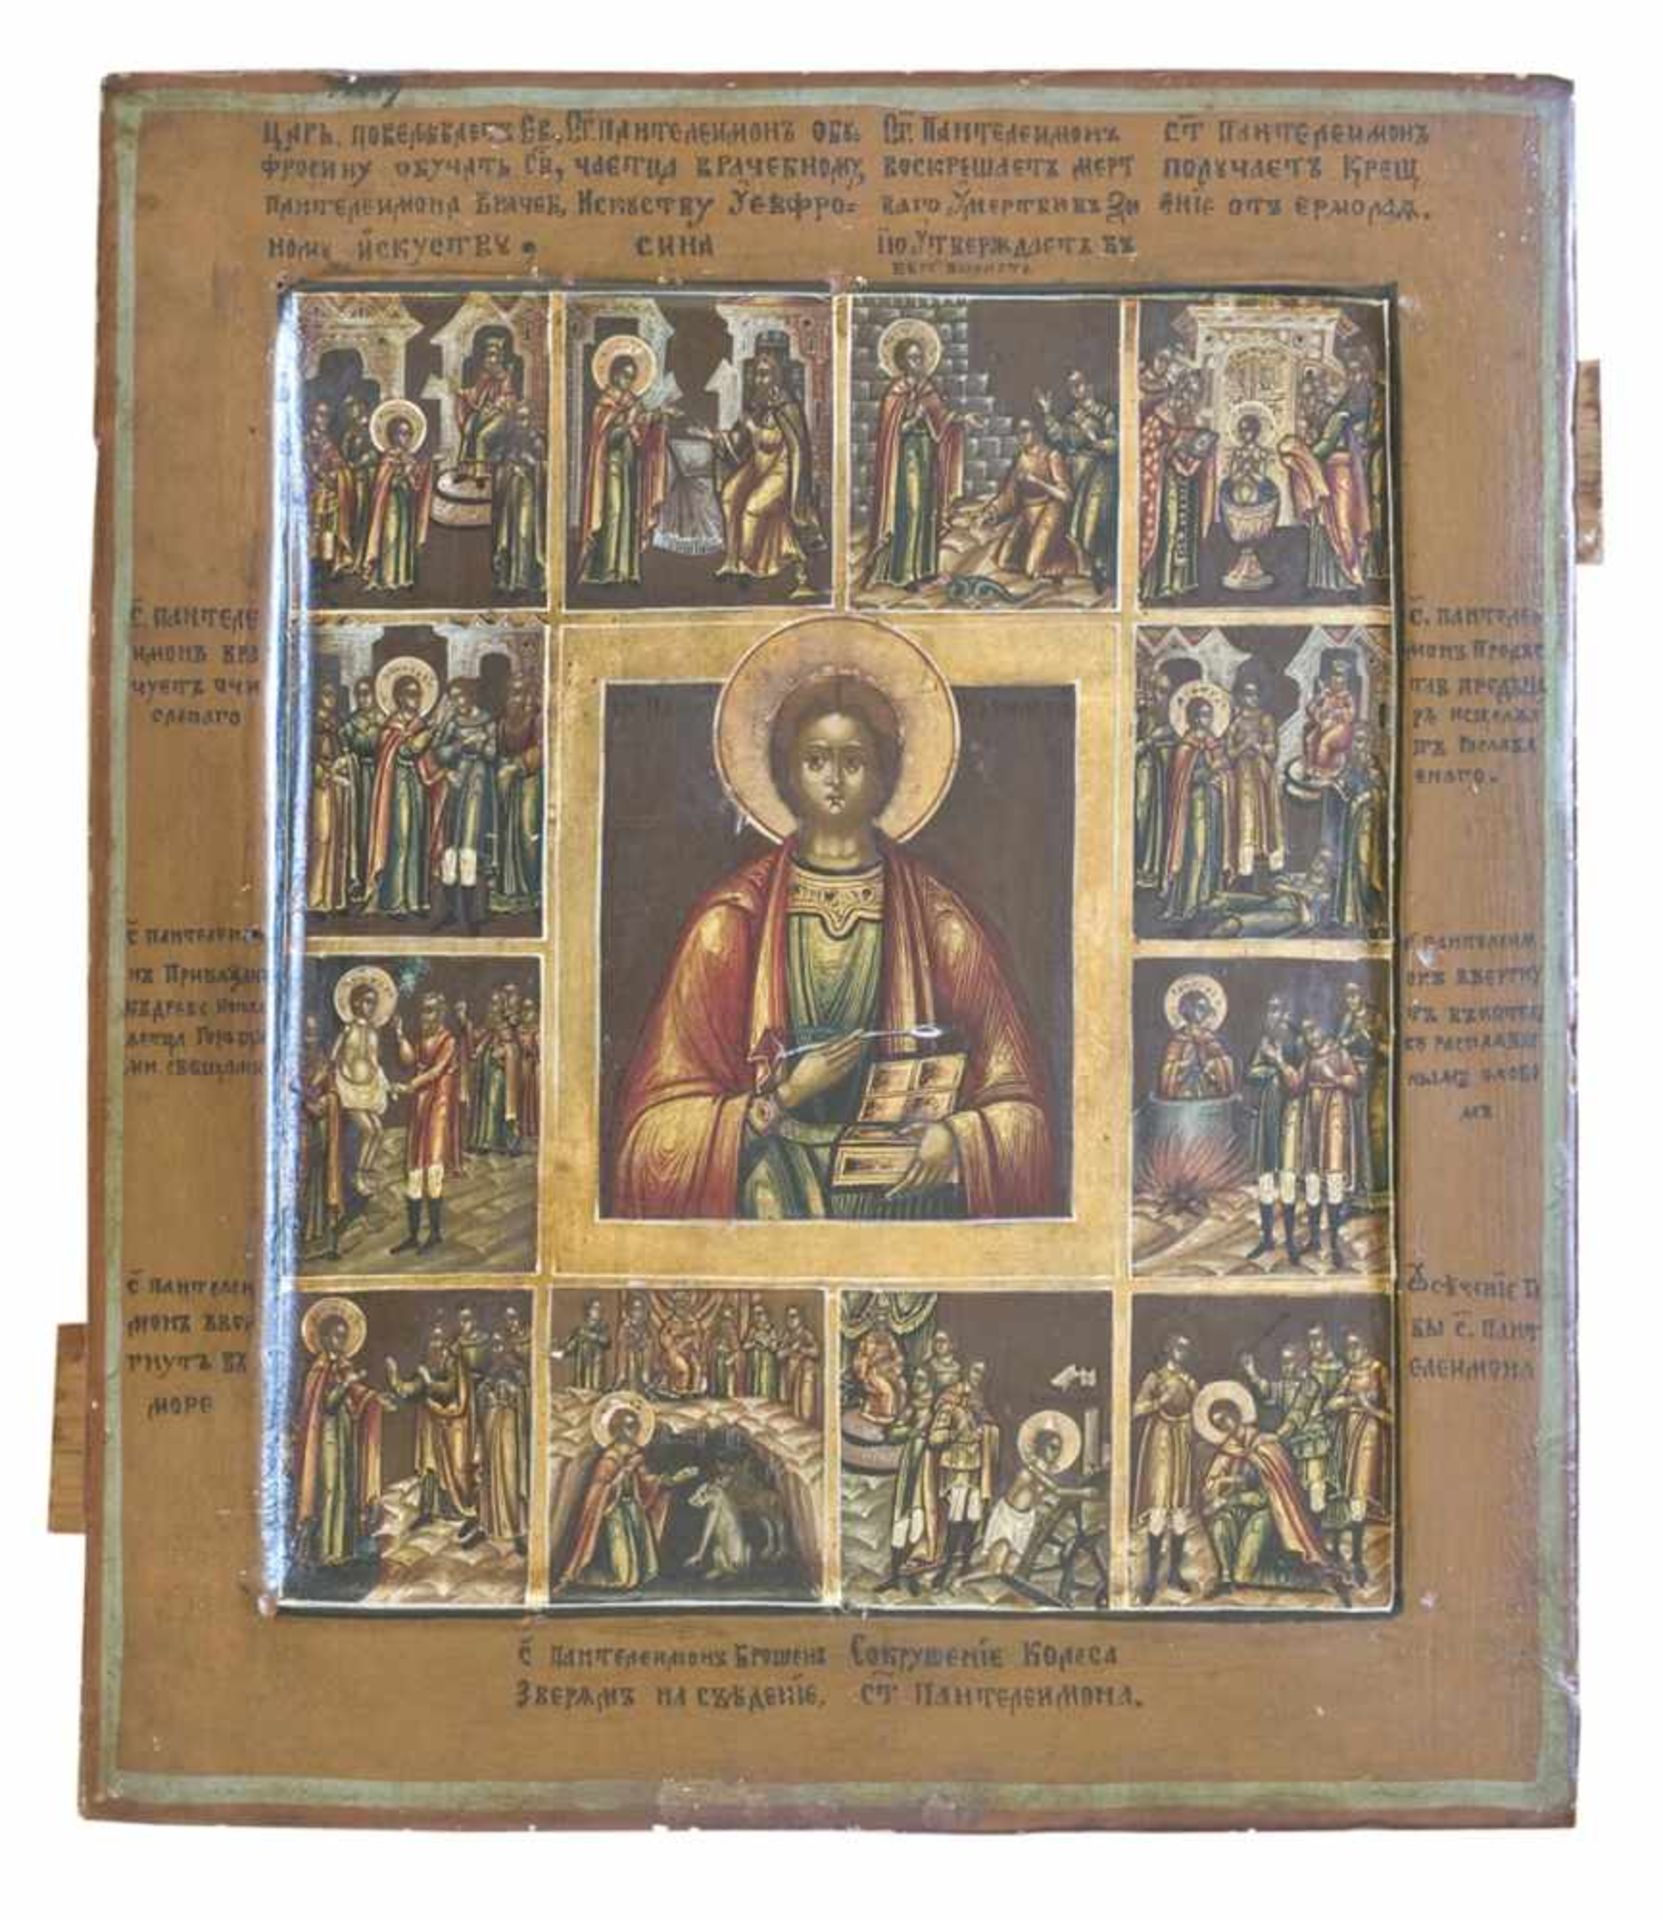 Ikonen.-Martyrium des heiligen Bartholomäus. Tempera und Gold auf Holz. Zentral-Russland, um 1850.